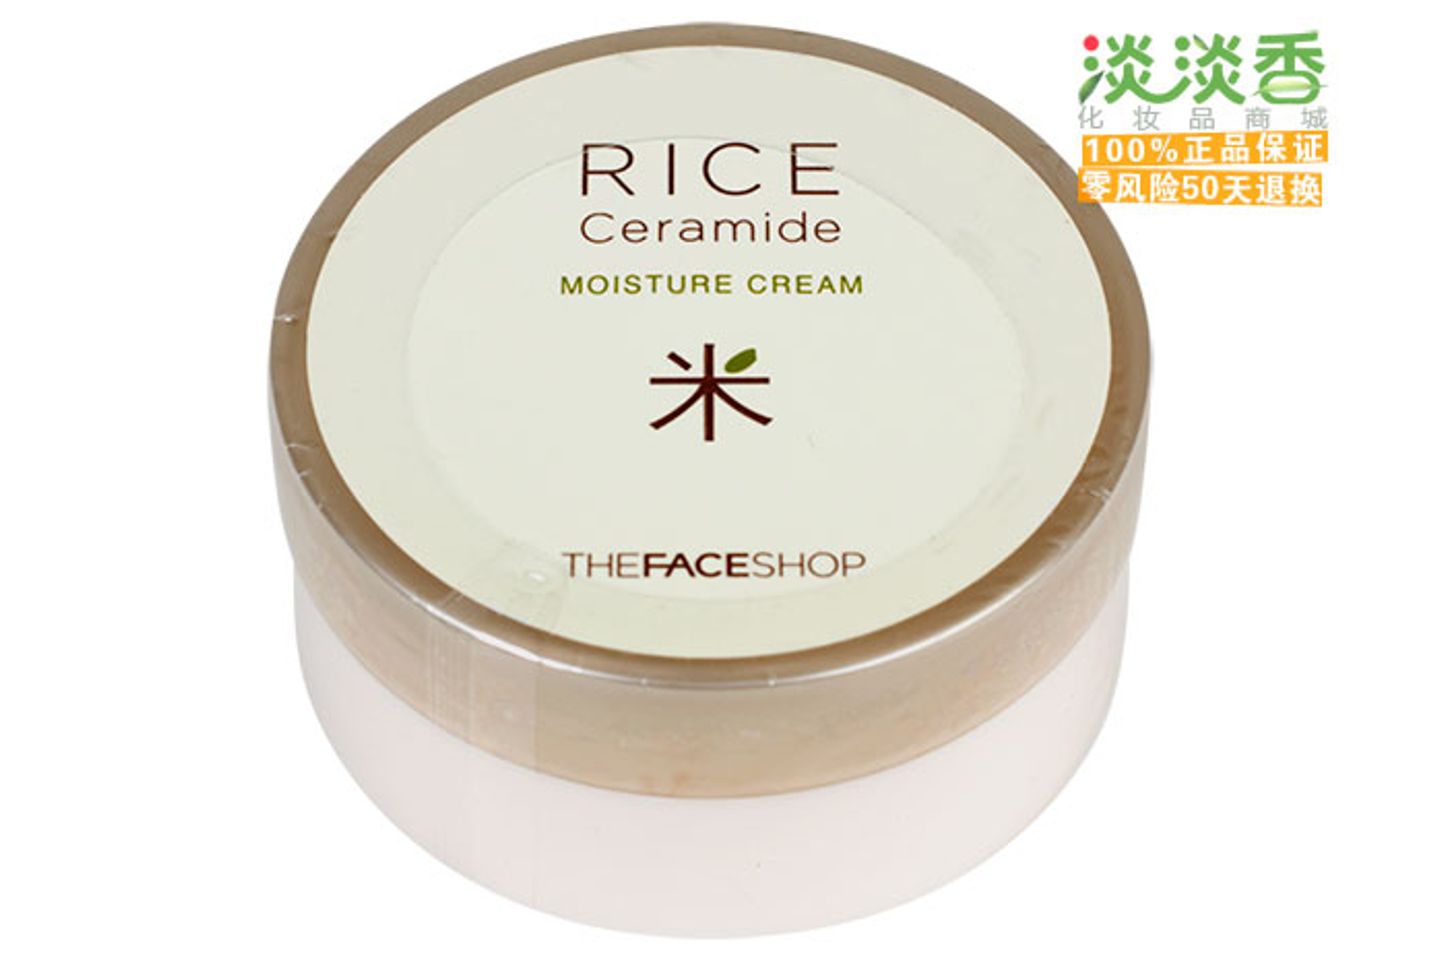 Kem dưỡng ẩm Rice Ceramide Moisture Cream – The face shop với chiết xuất từ gạo